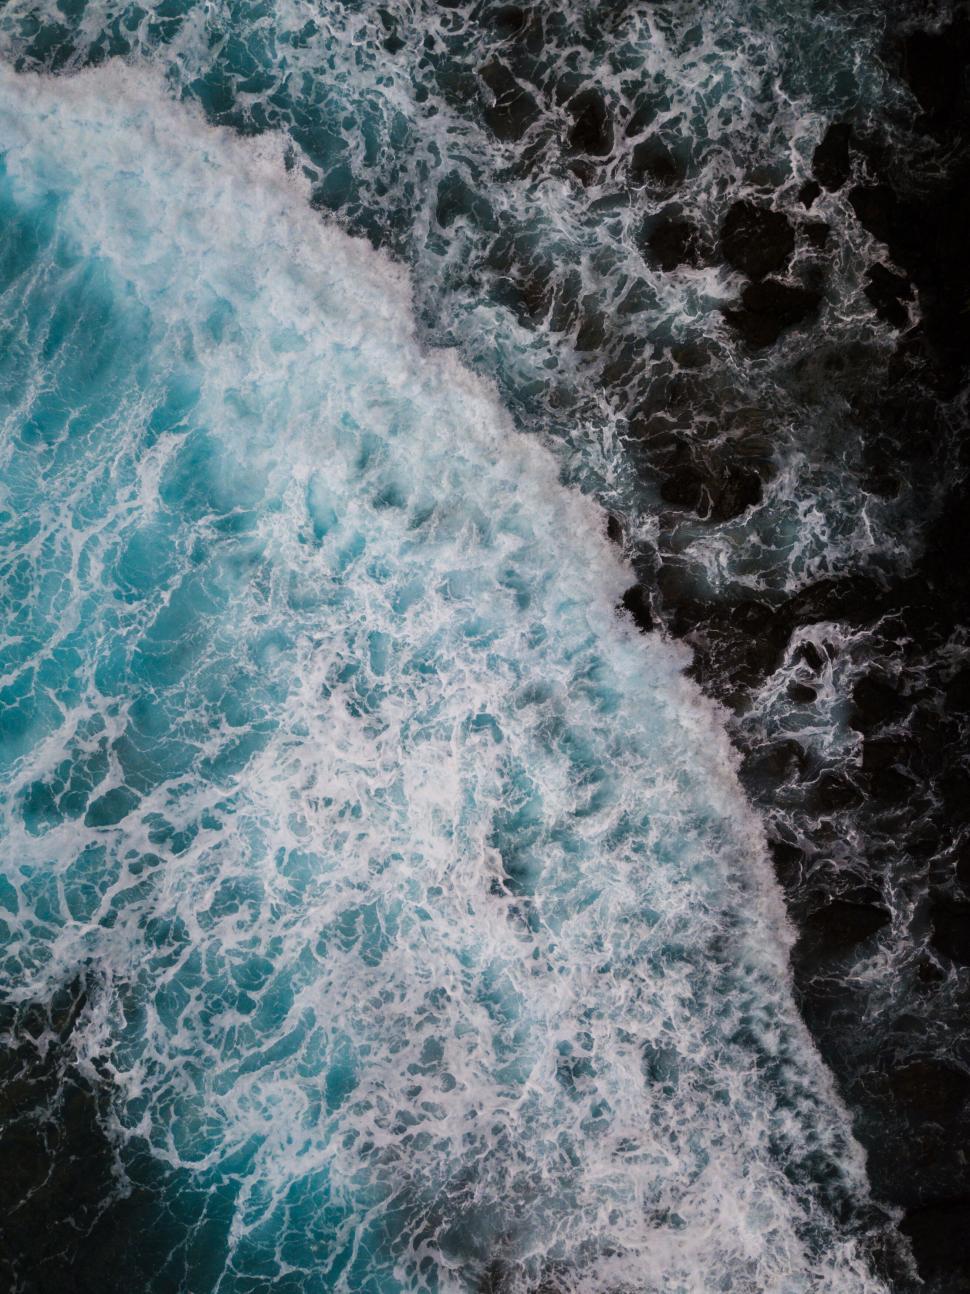 Free Image of Turquoise waves crashing onto dark rocks 